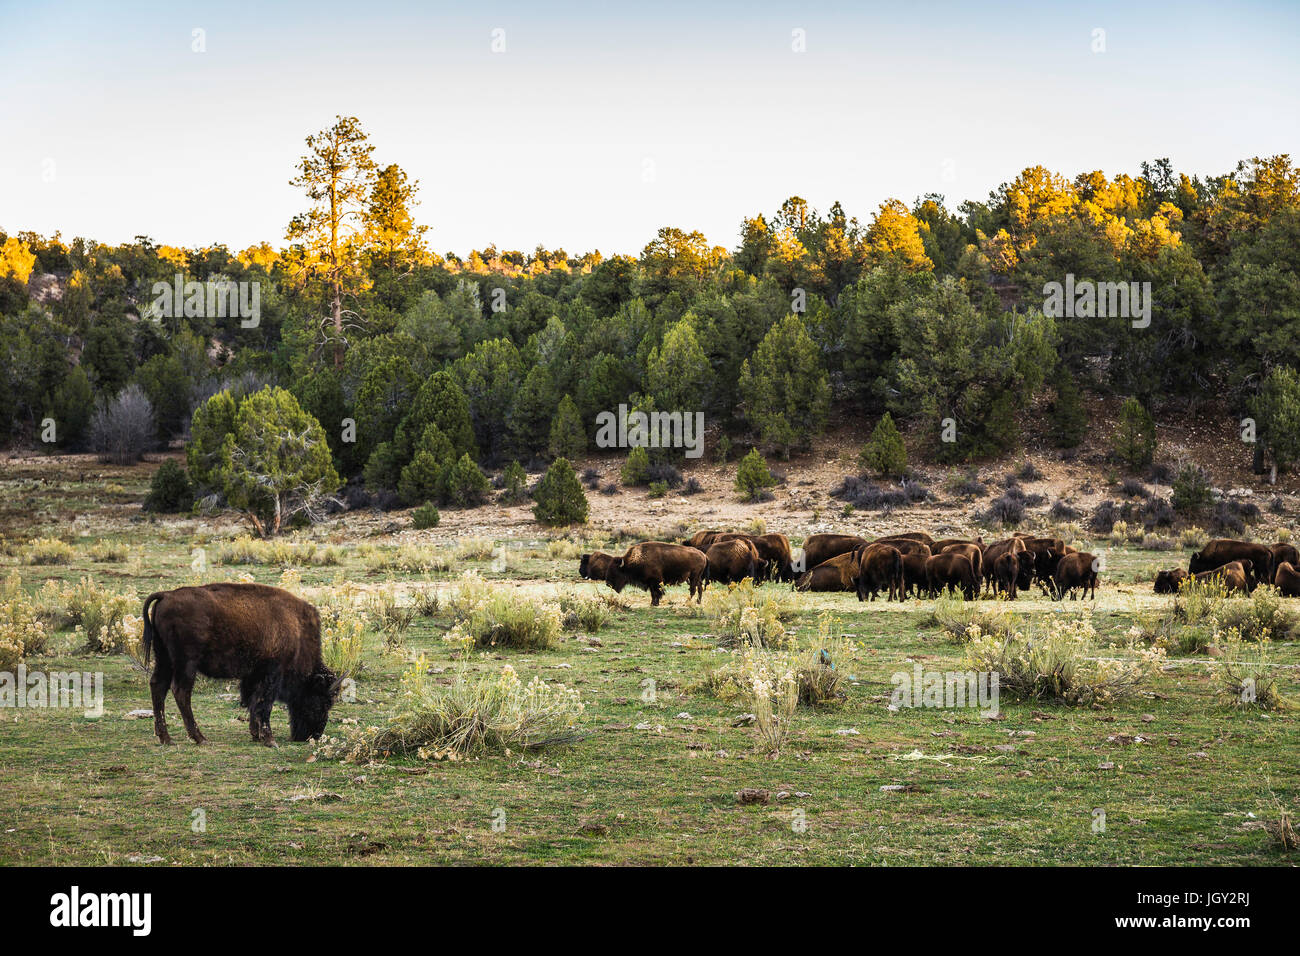 Cattle grazing, Utah, USA Stock Photo